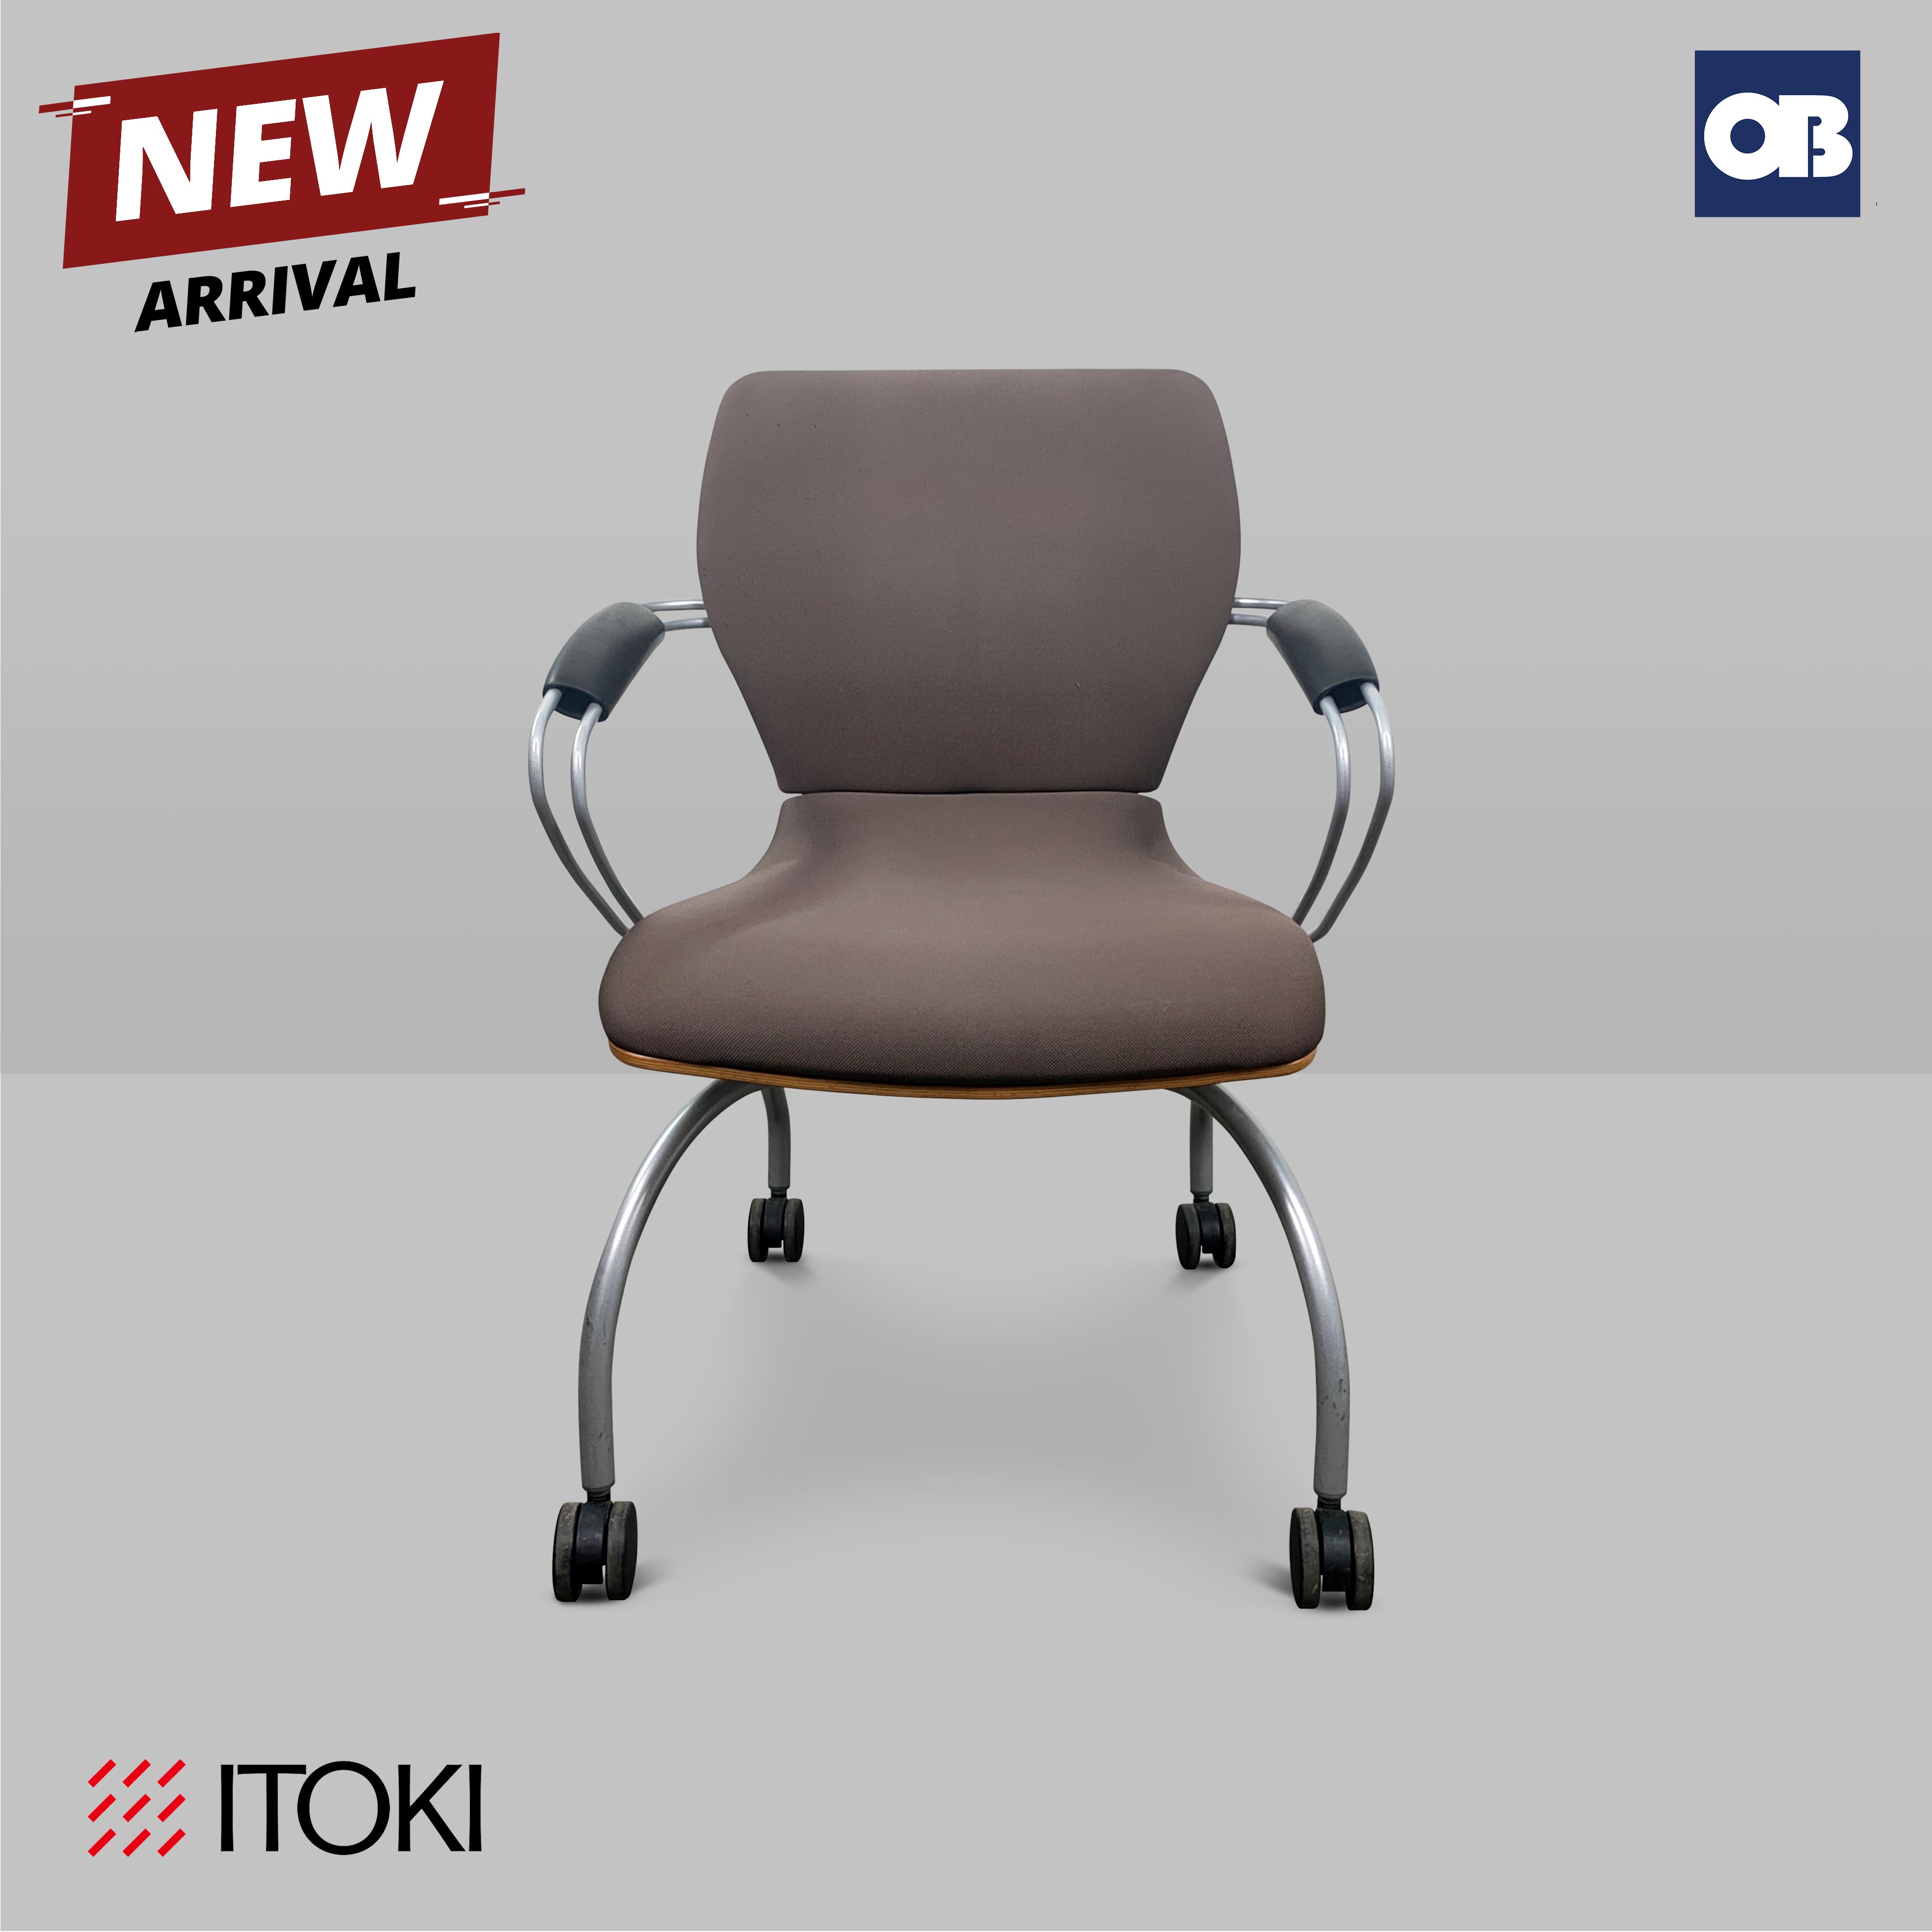 Itoki Meeting Chair